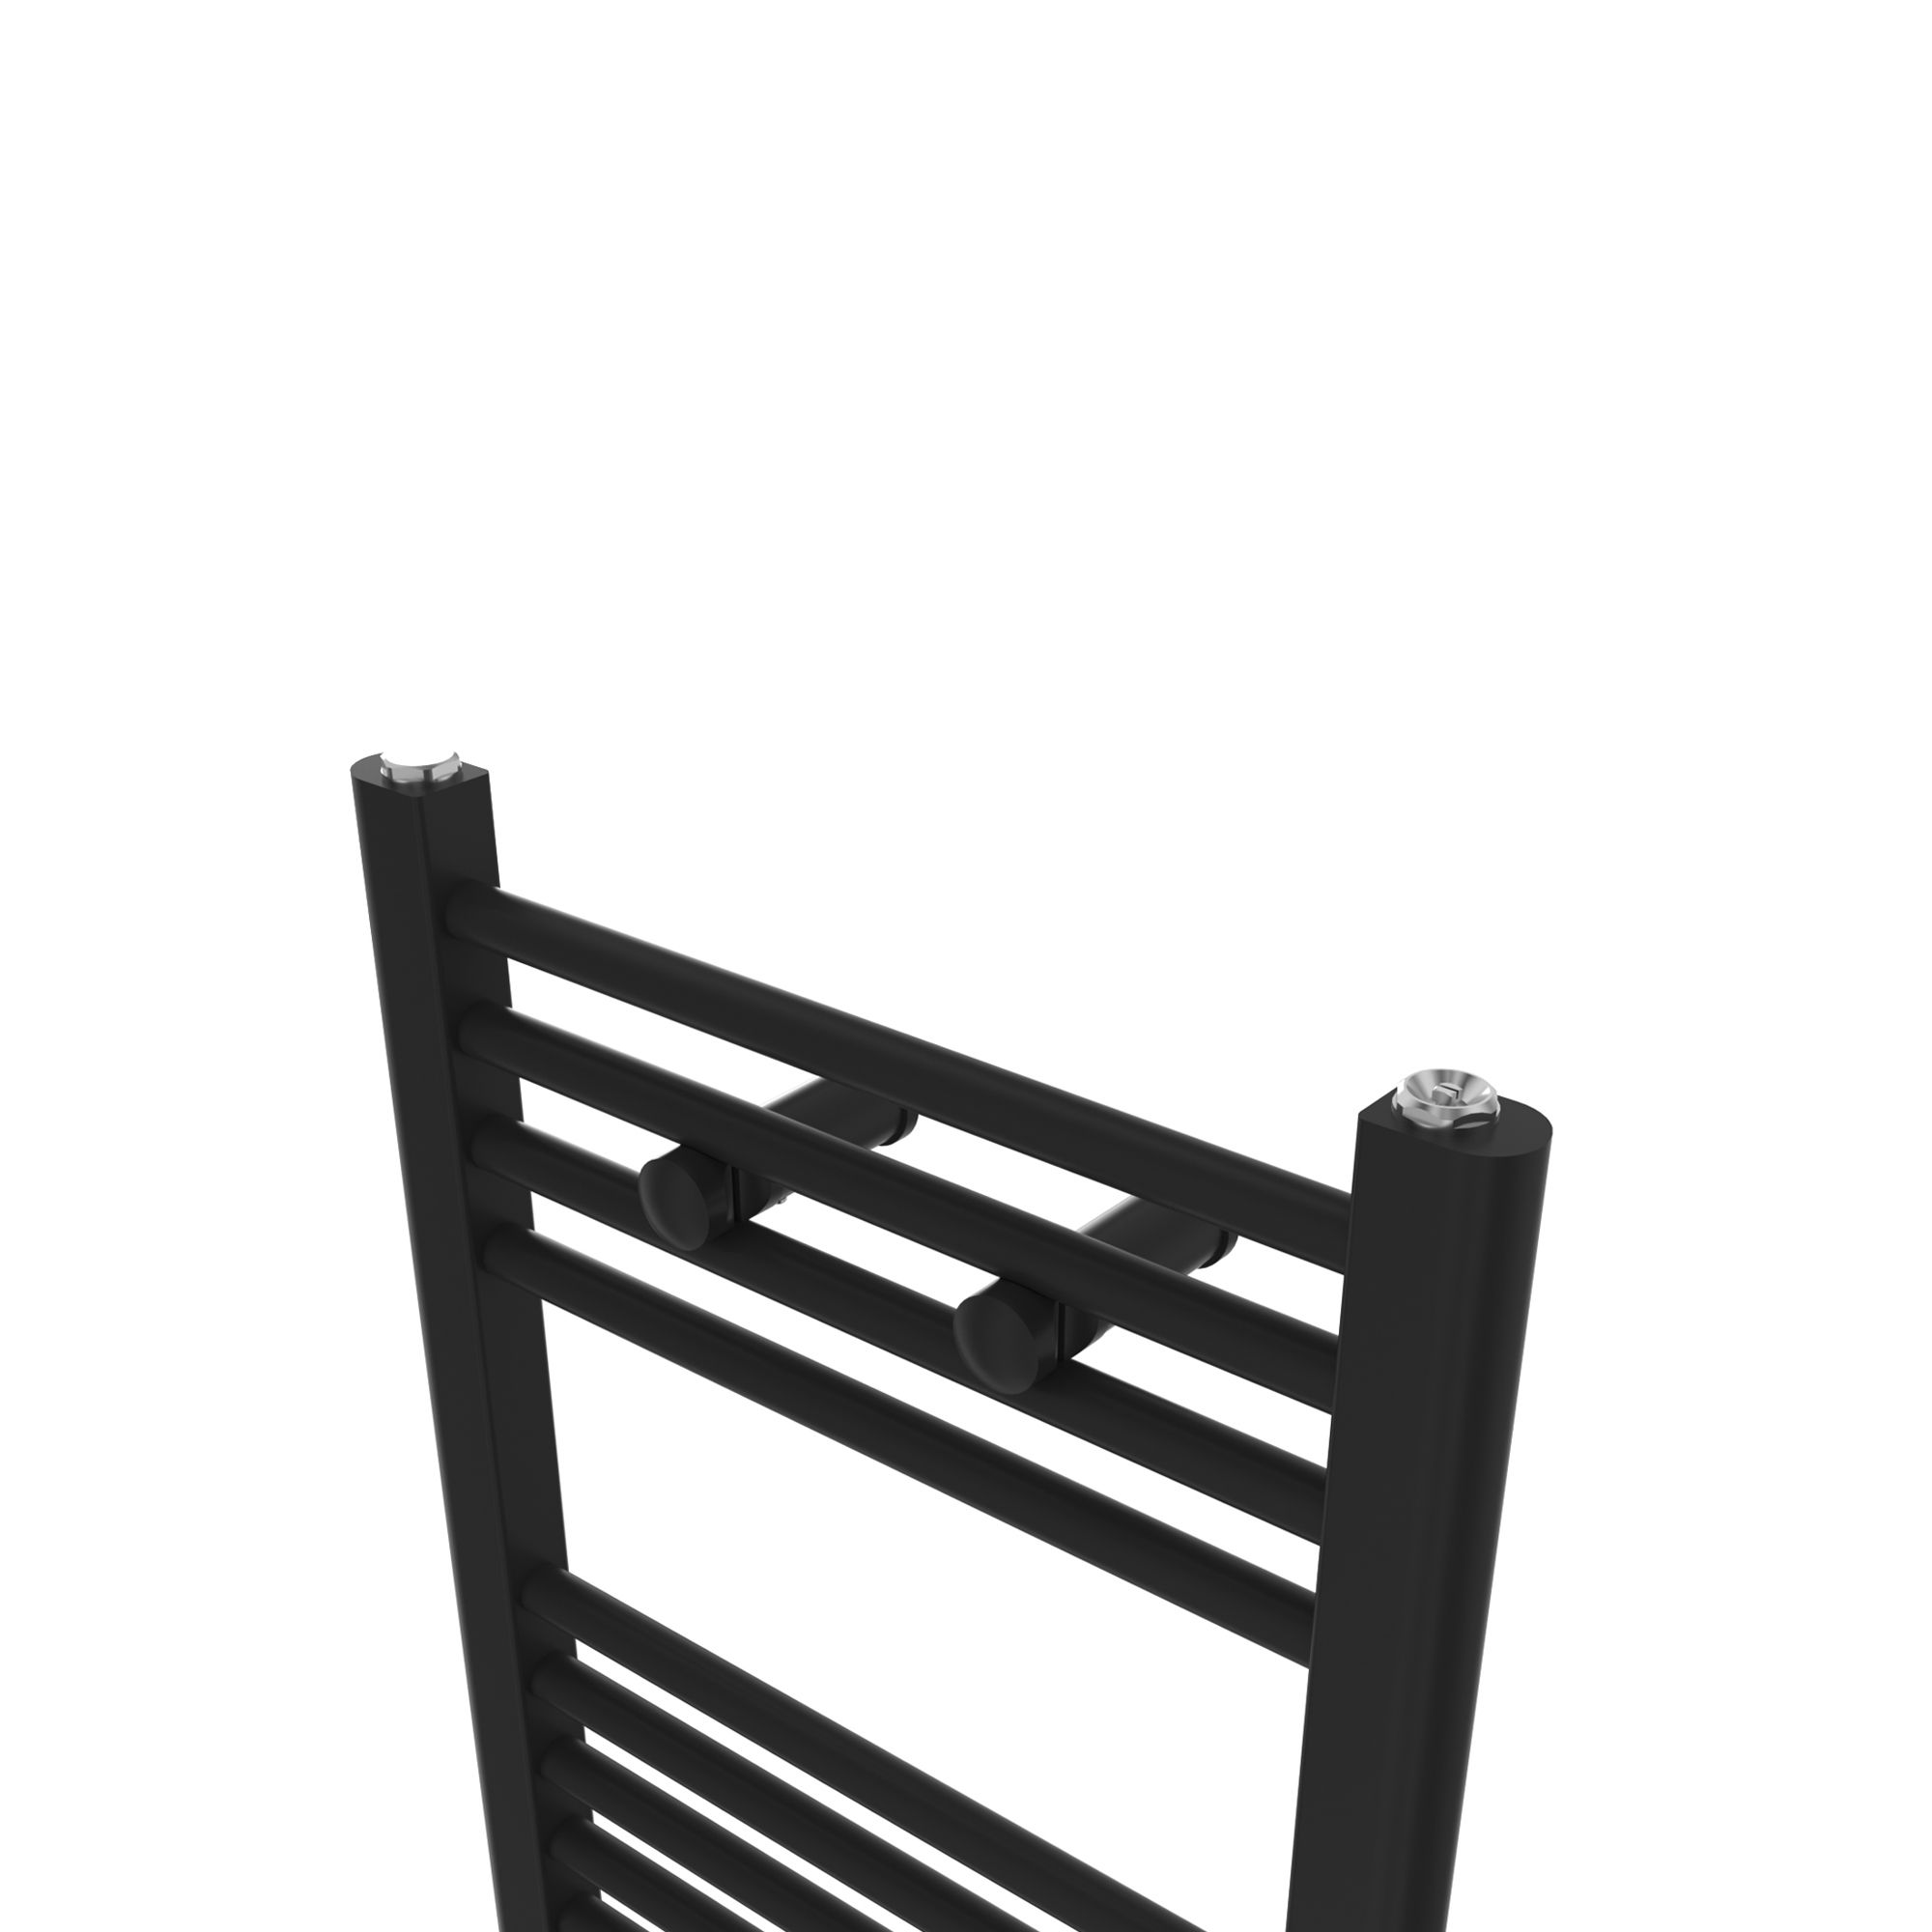 Flomasta Flat, Black Vertical Flat Towel radiator (W)400mm x (H)700mm